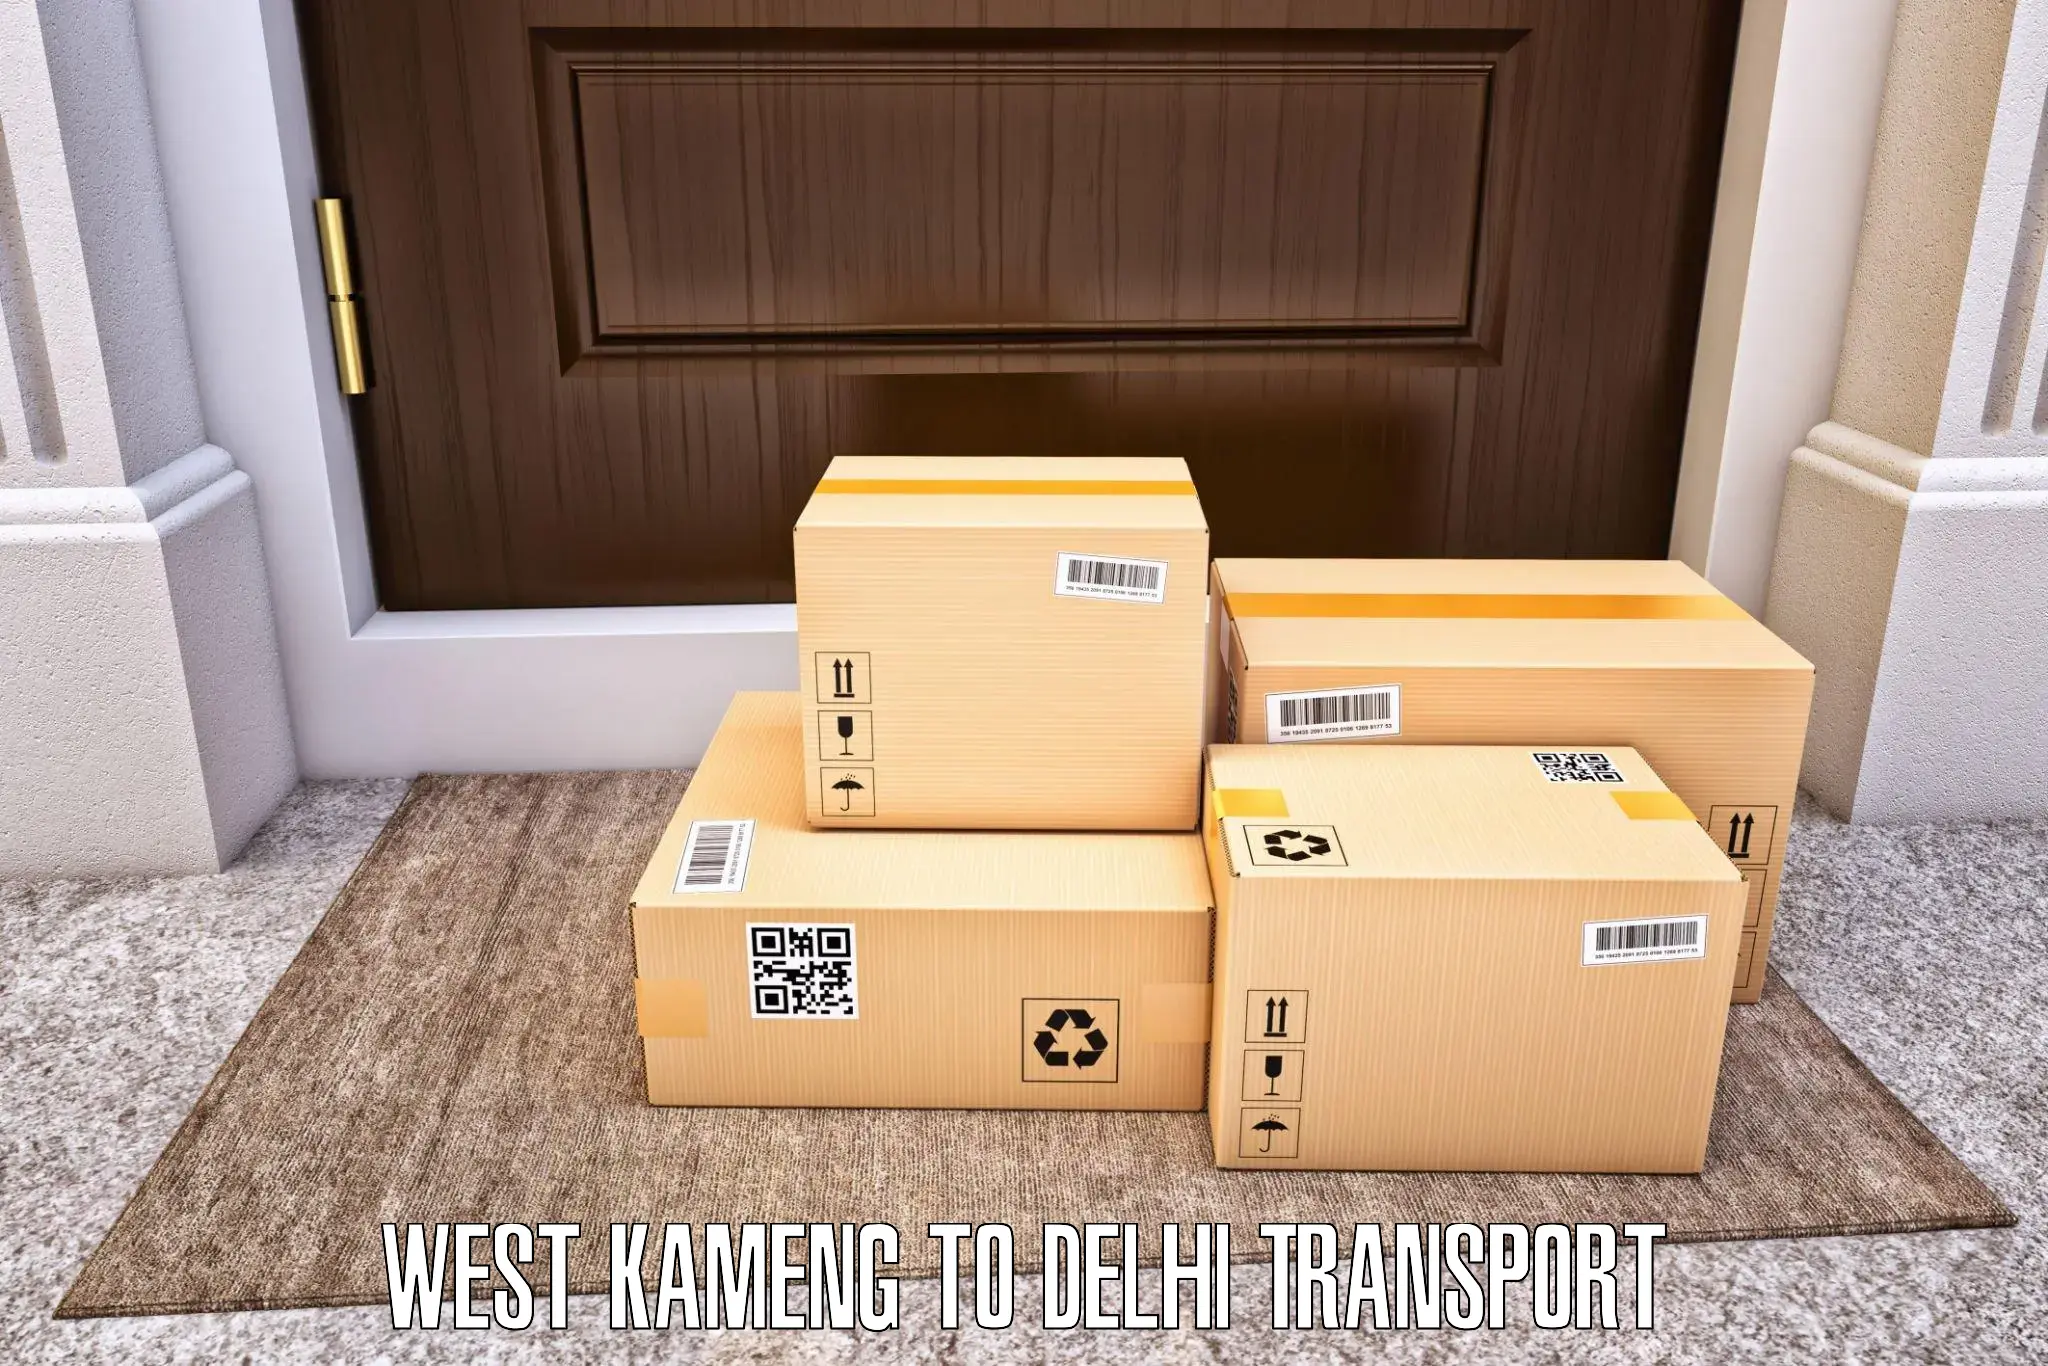 Logistics transportation services West Kameng to Jhilmil